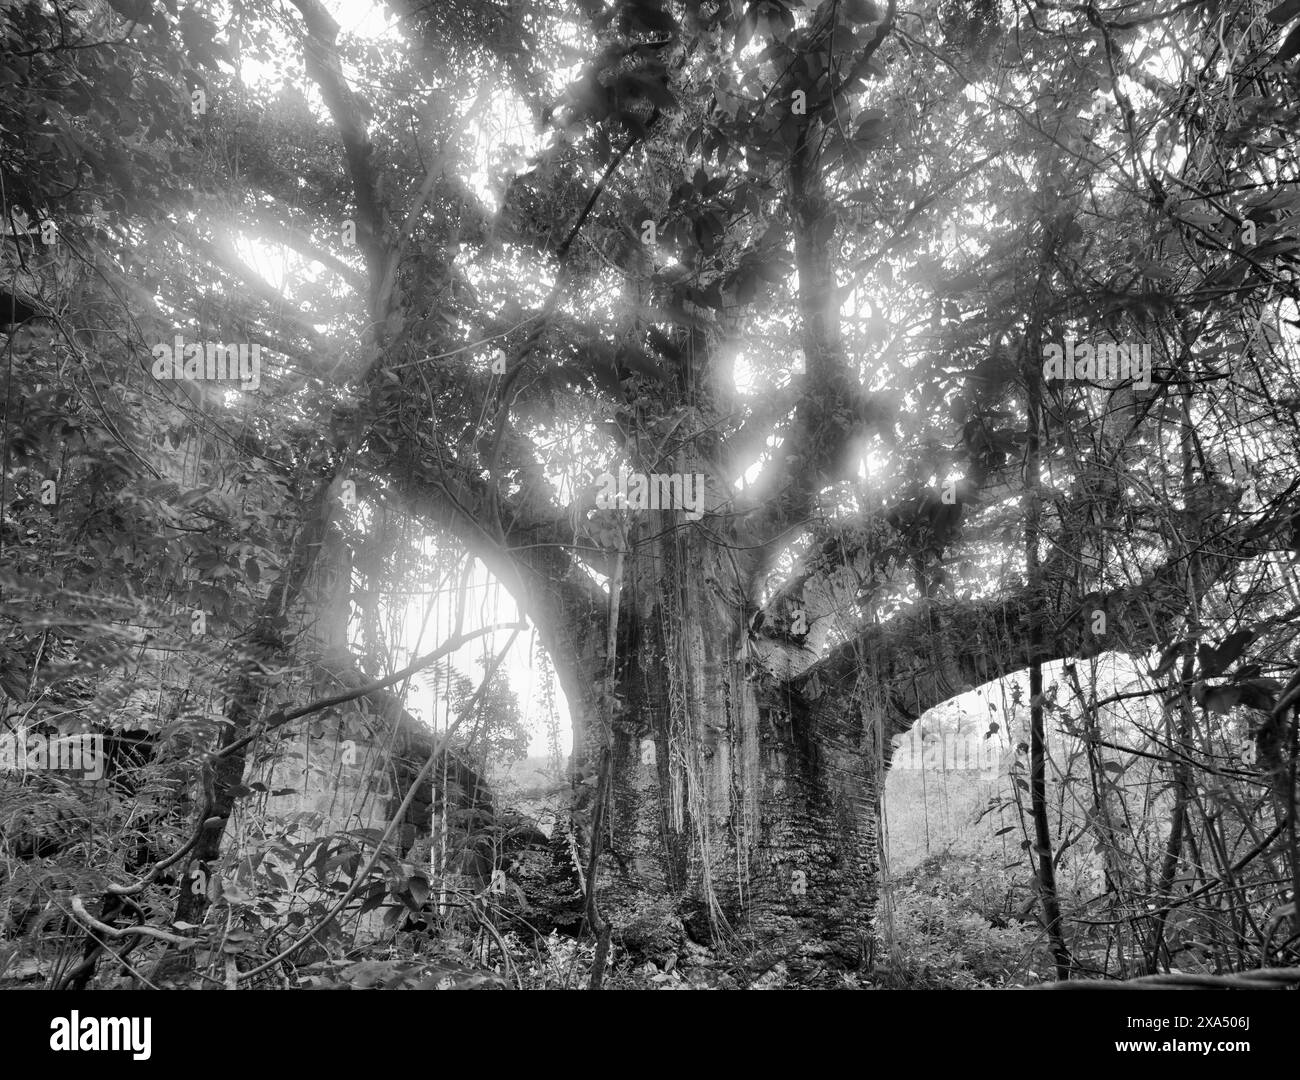 La lumière du soleil coule à travers les branches d'arbres anciens enchevêtrés dans des crues dans une forêt brumeuse. Banque D'Images